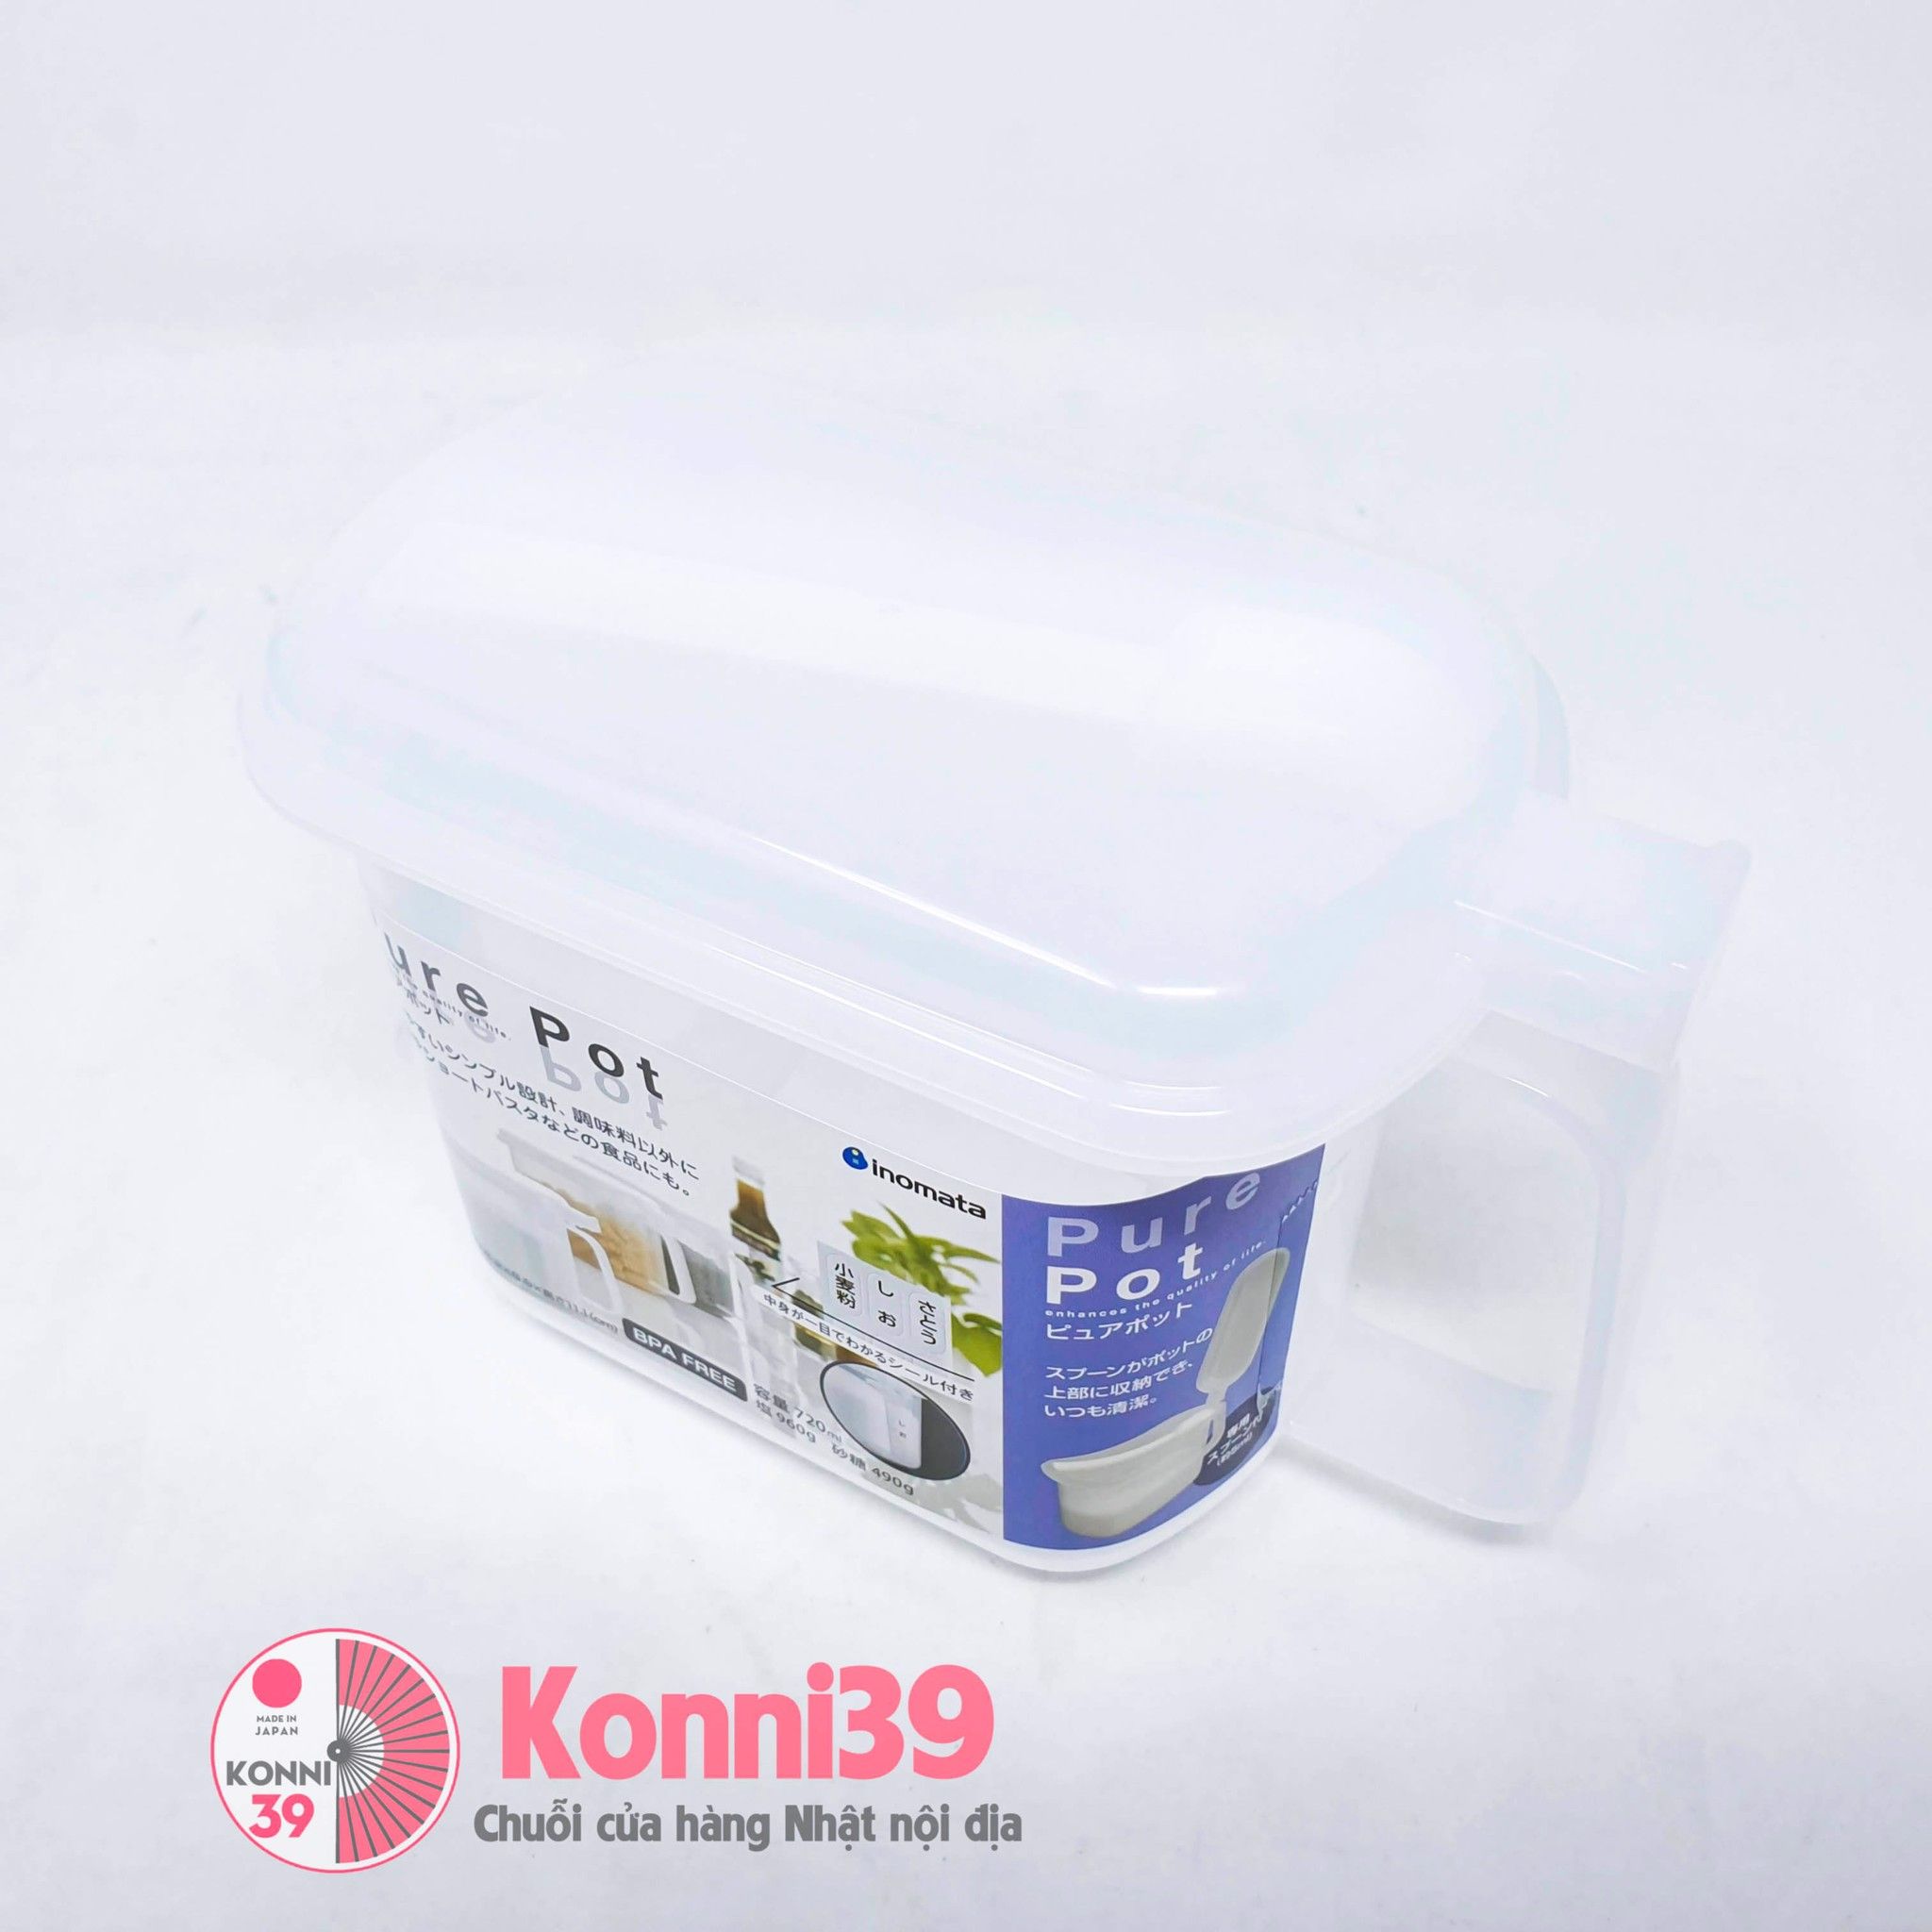 Ca đựng gia vị nắp liền Inomata màu trắng 720ml mới nhất 2020 – Chuỗi siêu  thị Nhật Bản nội địa - MADE IN JAPAN Konni39 tại Việt Nam